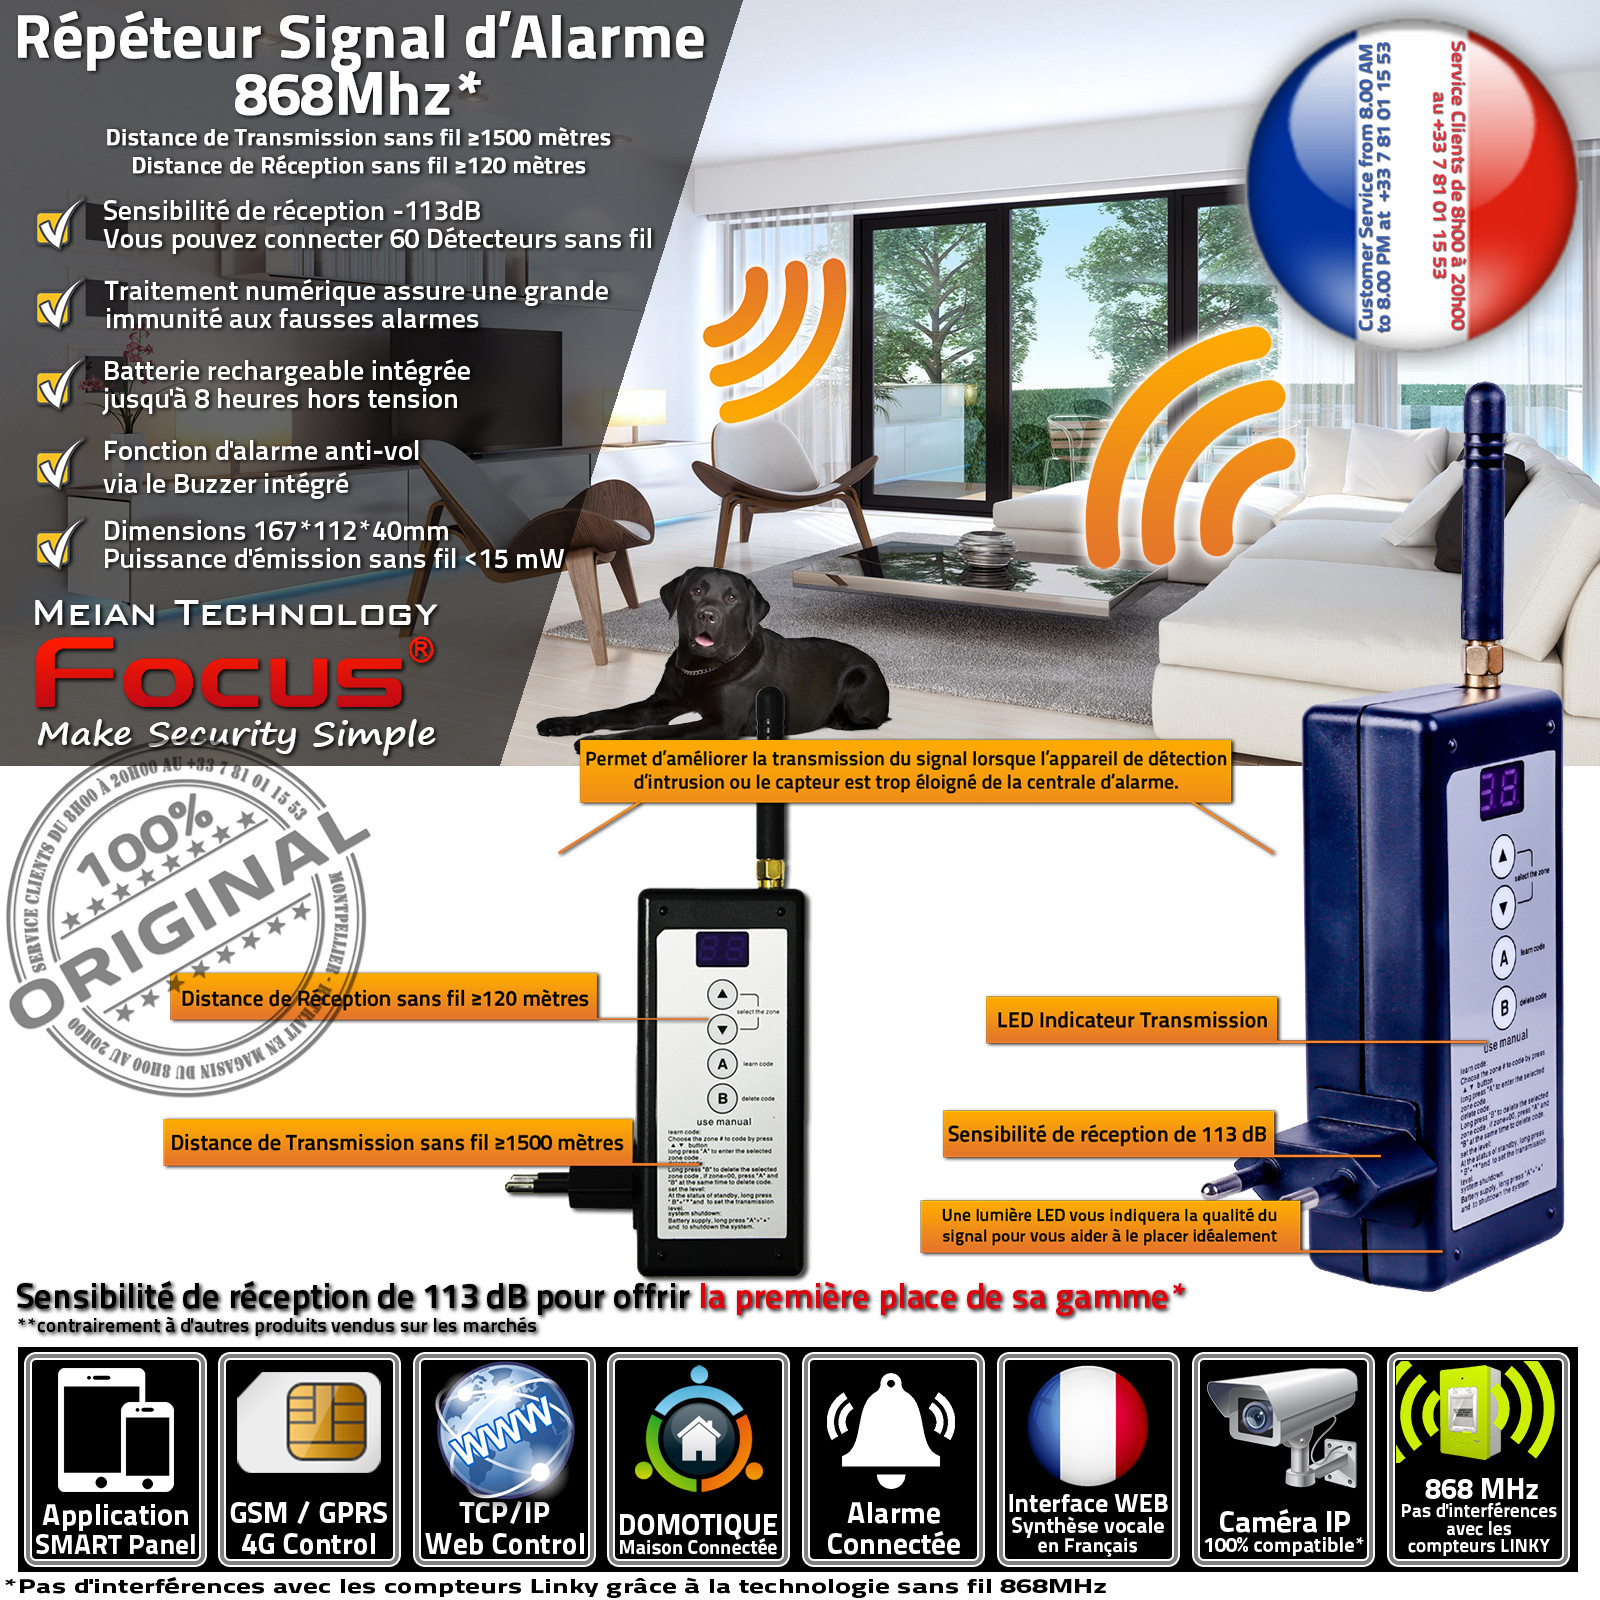 PB-204R 868MHz Répéteur Signal d'alarme sans fil Amplificateur Distance réception / émission